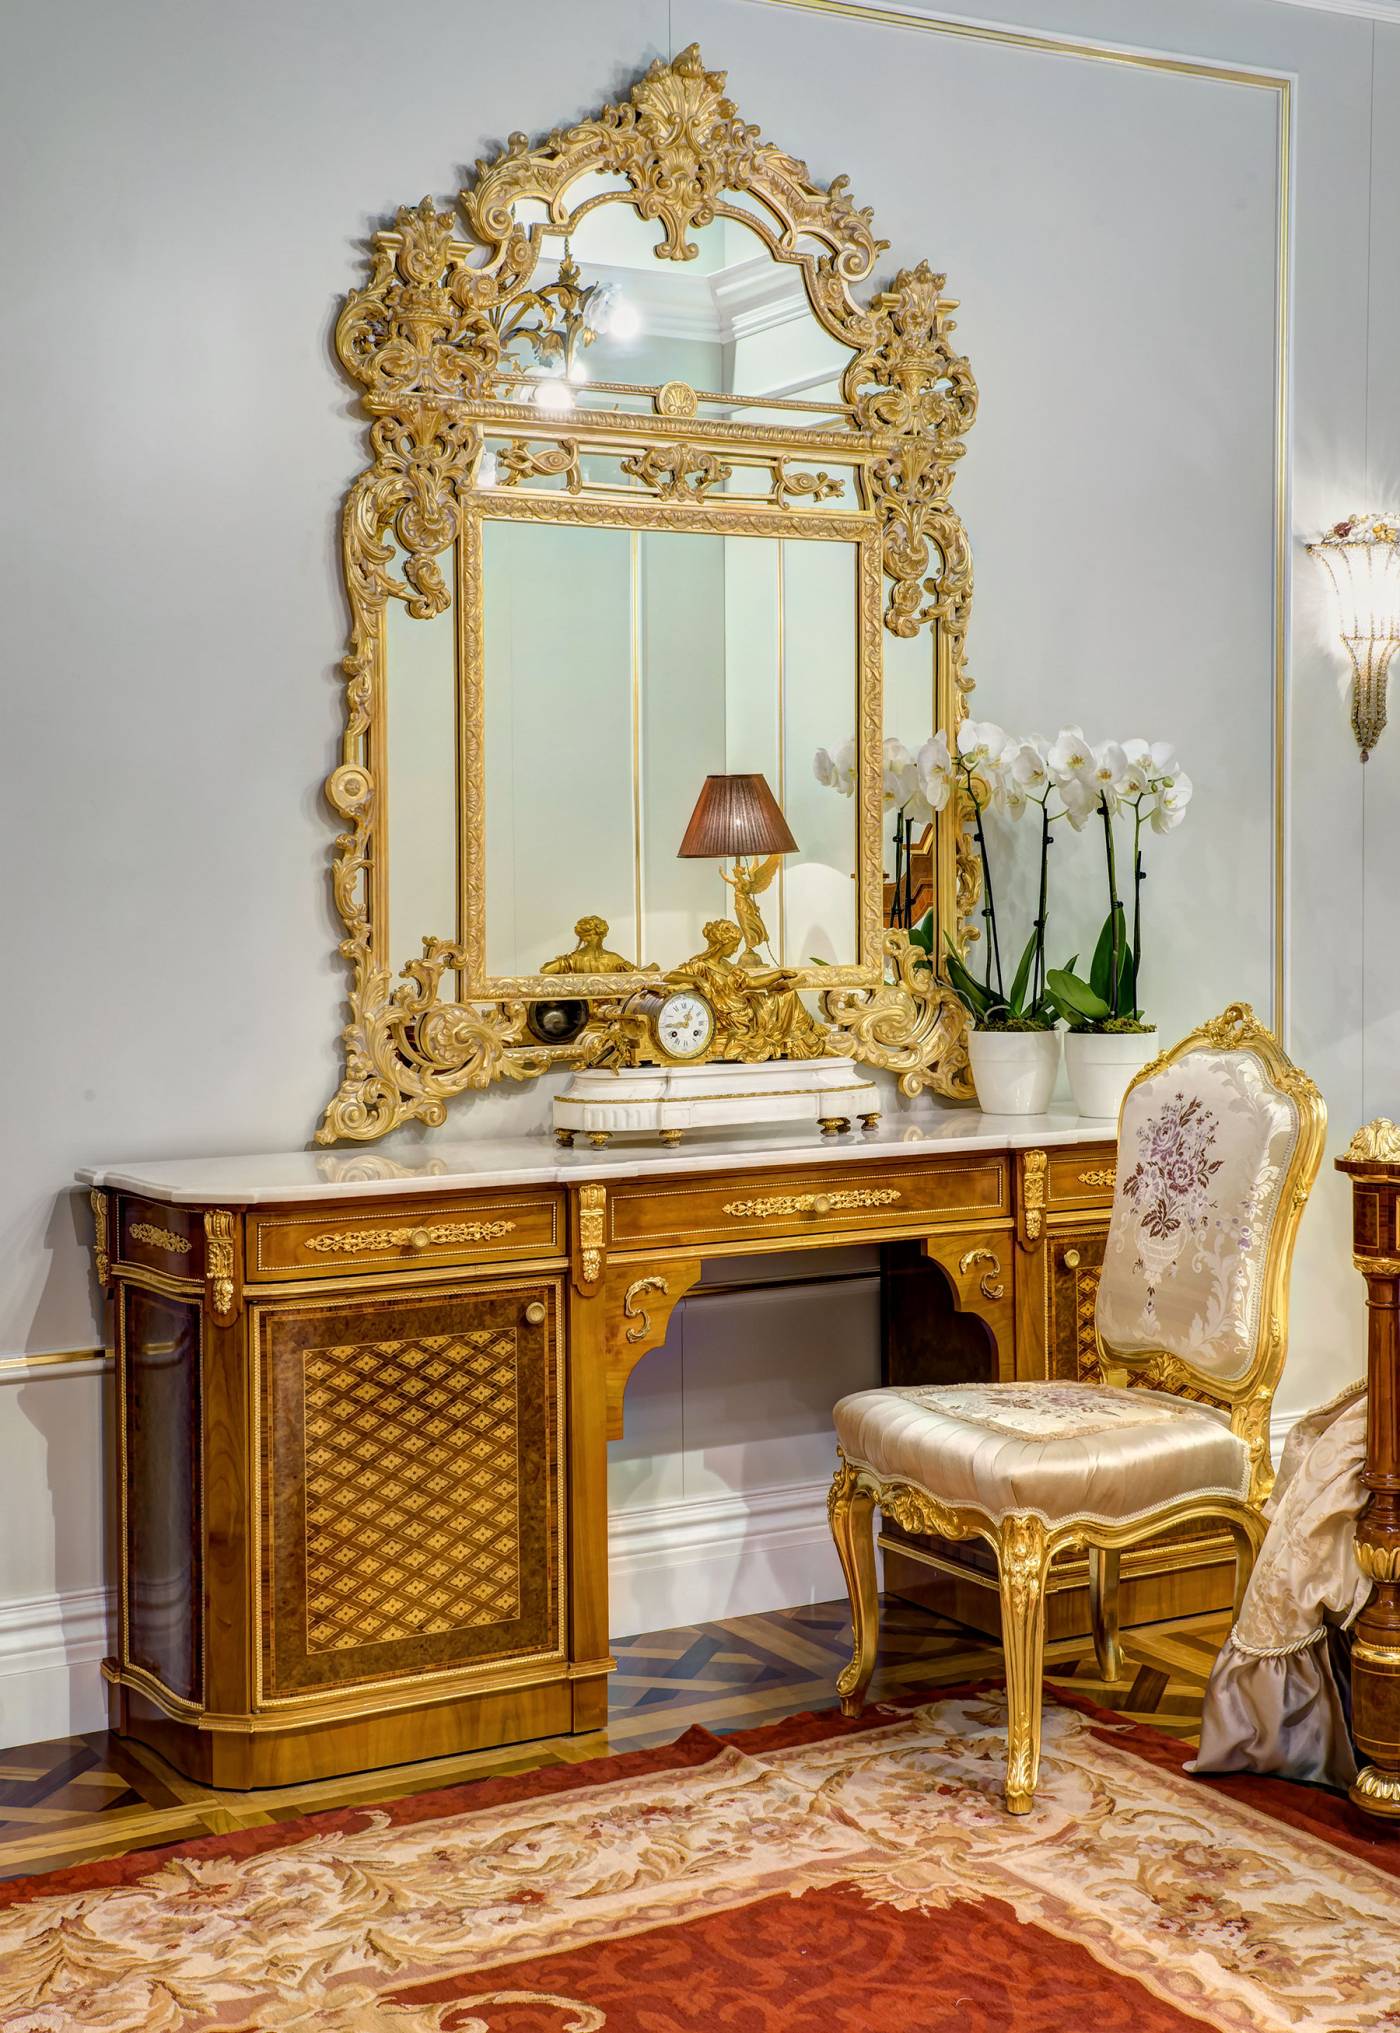 cg-capelletti-luxury-forniture-made-in-italy-desk-mirror